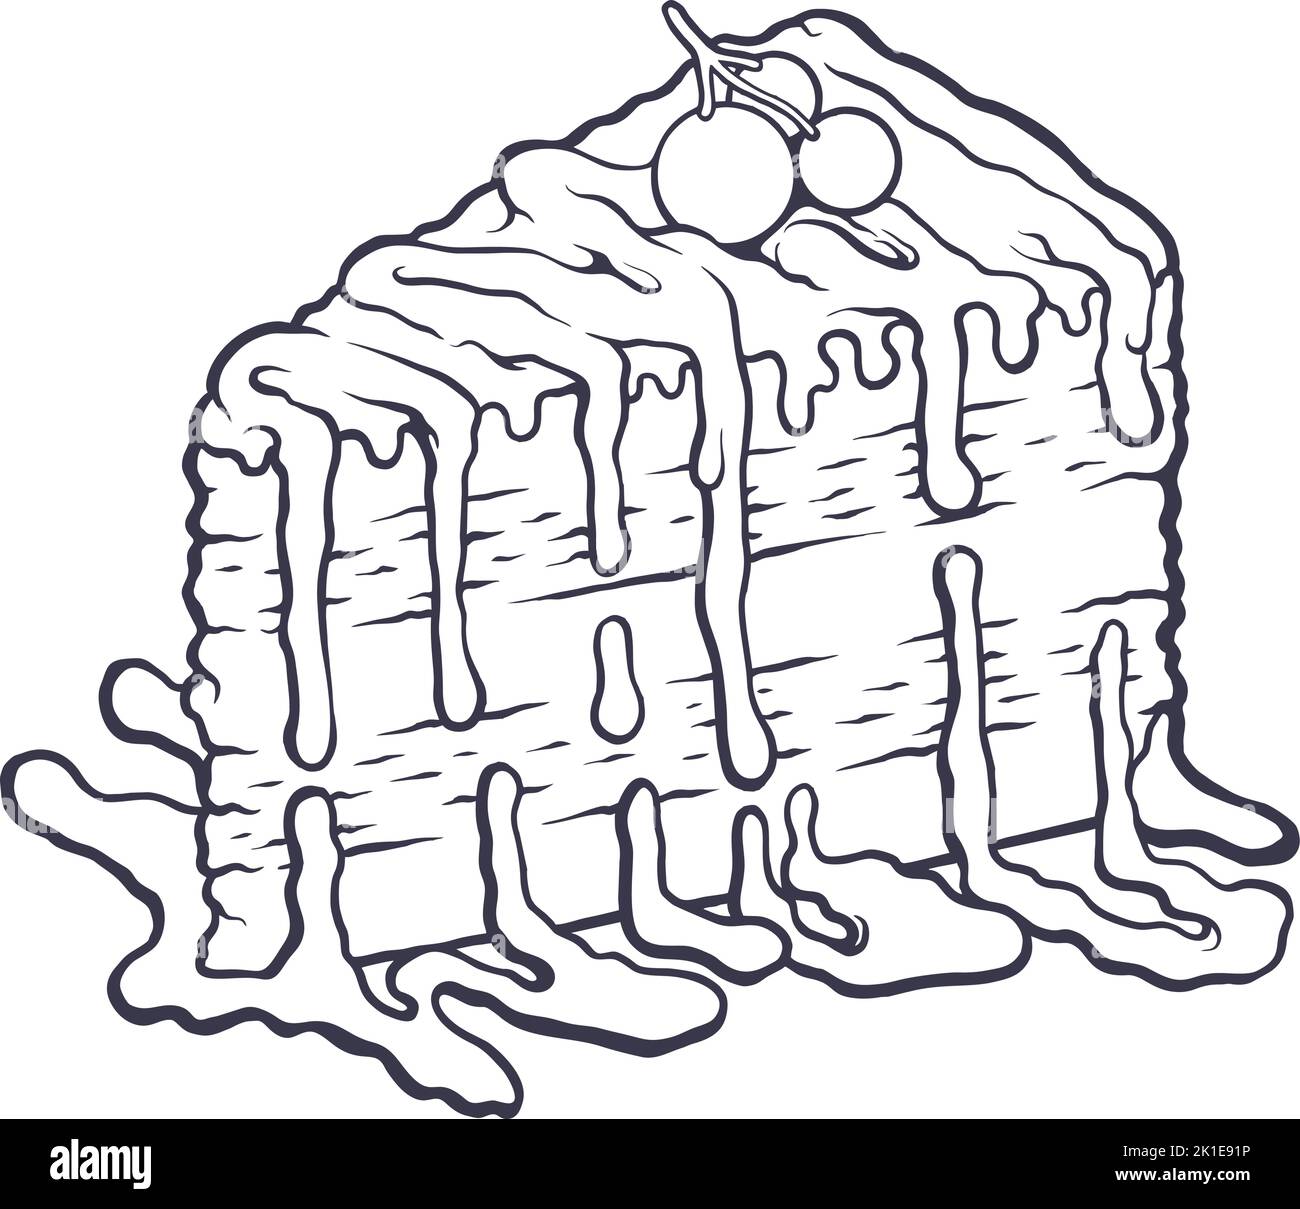 Délicieux gâteau de cerise d'anniversaire tranches d'illustrations vectorielles monochromes pour votre logo de travail, t-shirt de marchandise, autocollants et dessins d'étiquettes Illustration de Vecteur